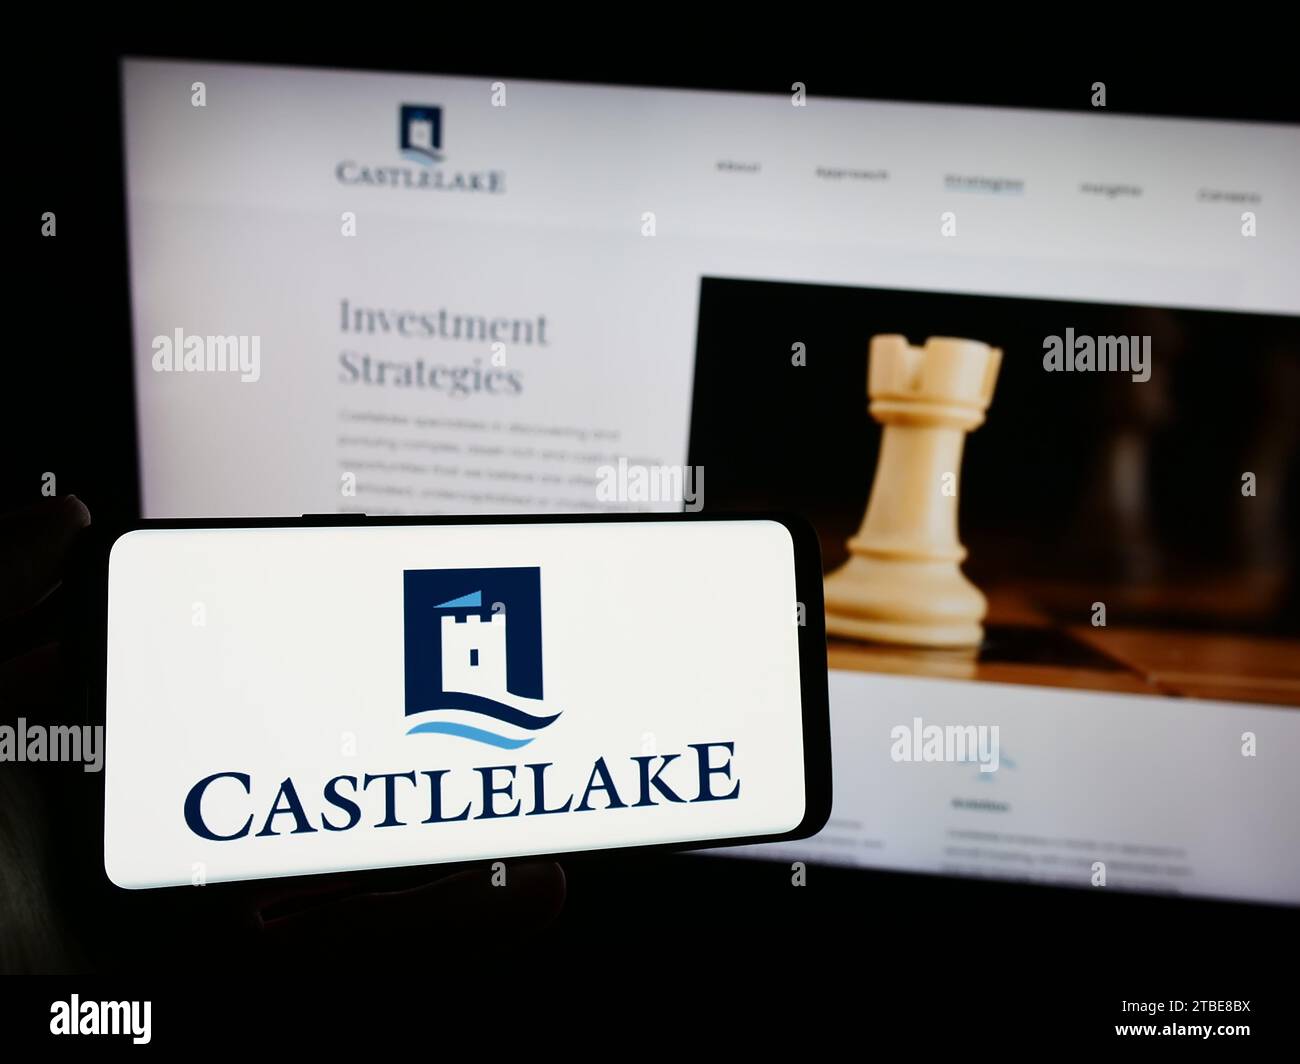 Personne détenant un smartphone avec le logo de la société américaine de gestion de placements Castlelake L.P. devant le site Web. Concentrez-vous sur l'affichage du téléphone. Banque D'Images